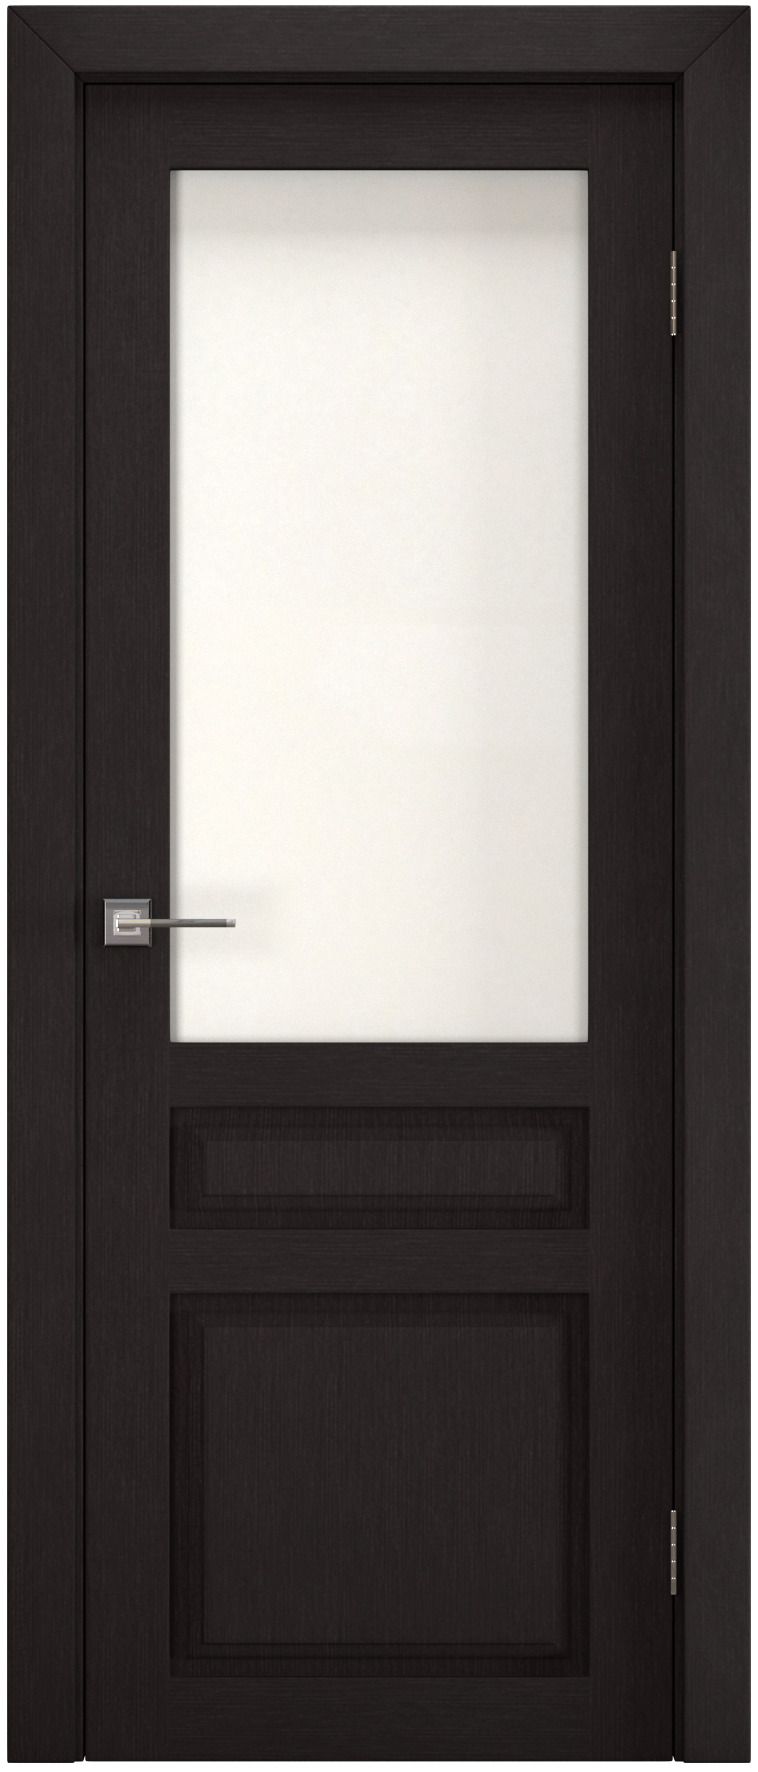 Полотно дверное остекленное Эко-шпон Британь 2000*800 Каштан, ст. рисунок "Хрусталь"